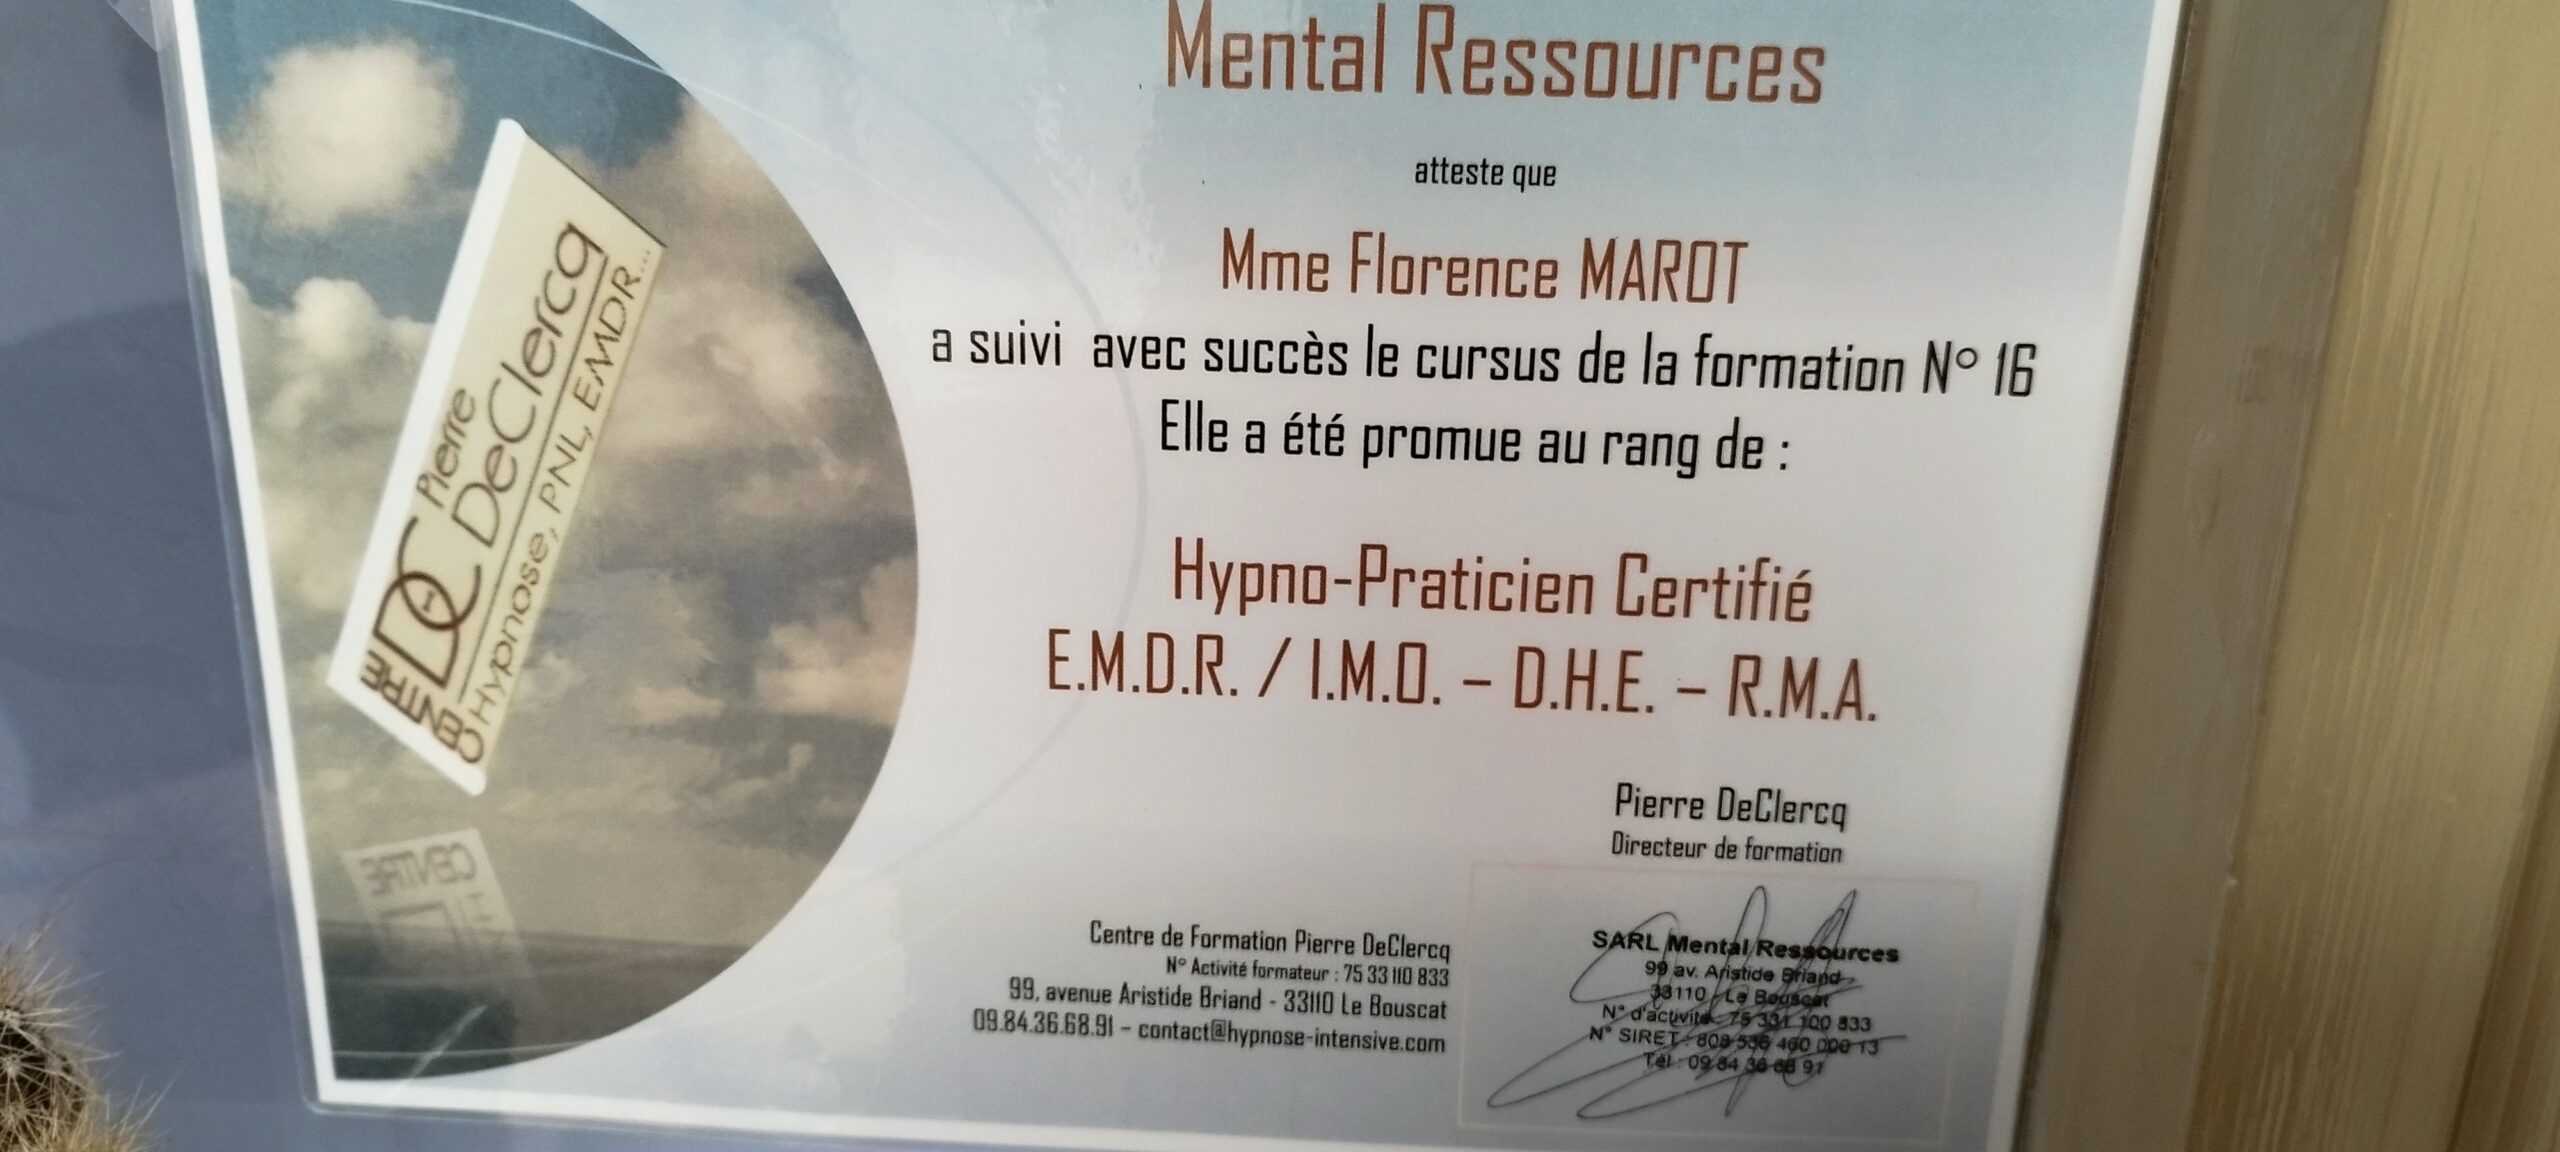 Hypnotherapeute-sophrologue-EMDR Bordeaux